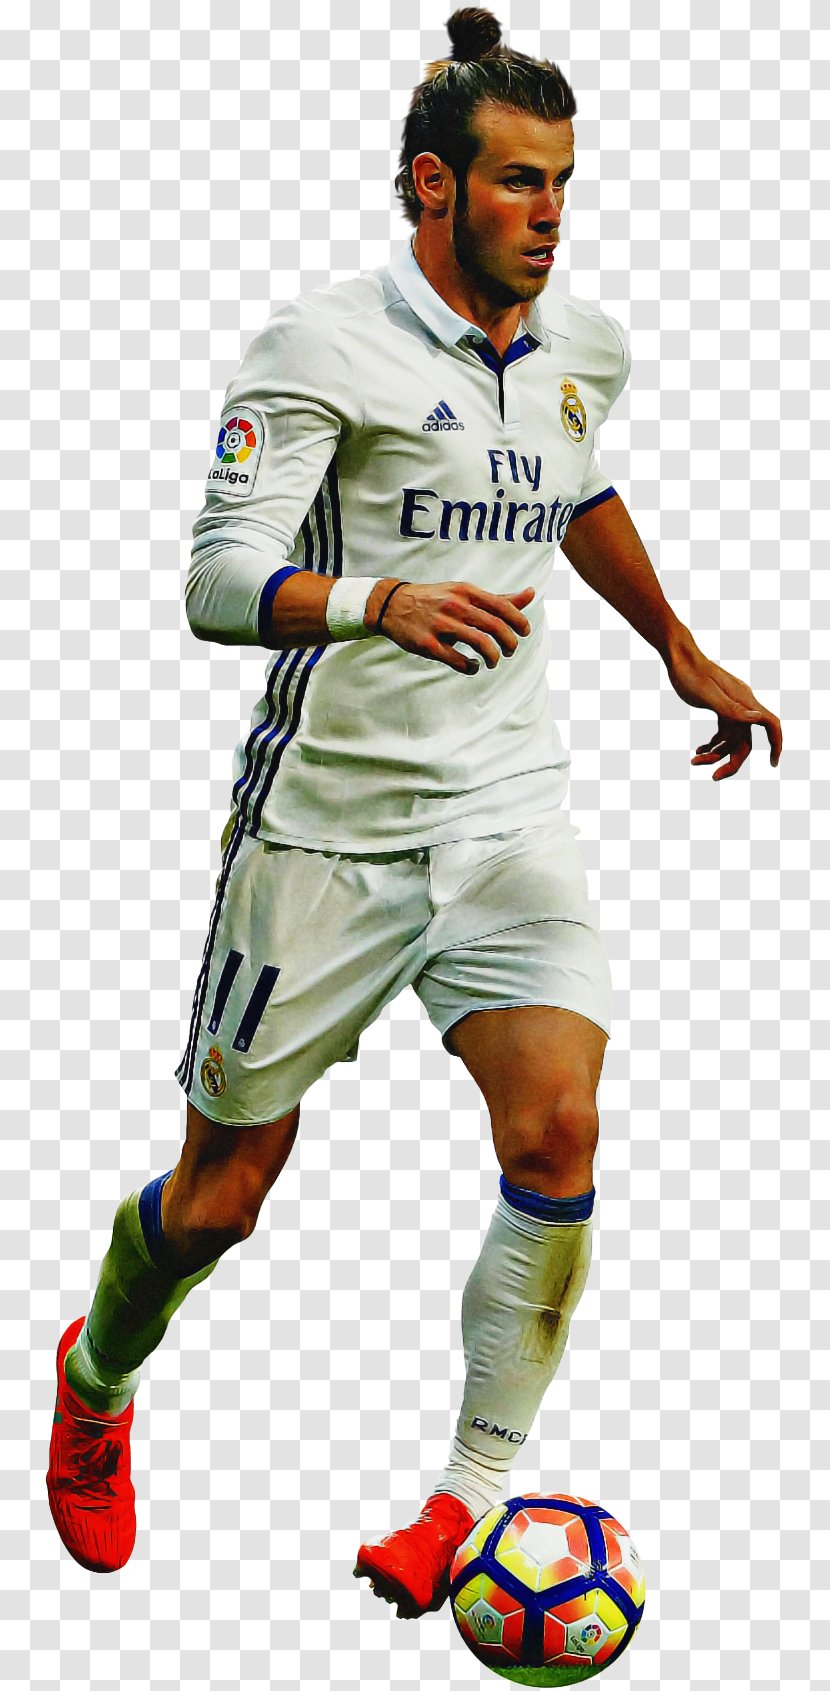 Cristiano Ronaldo - Football Equipment - Uniform Costume Transparent PNG